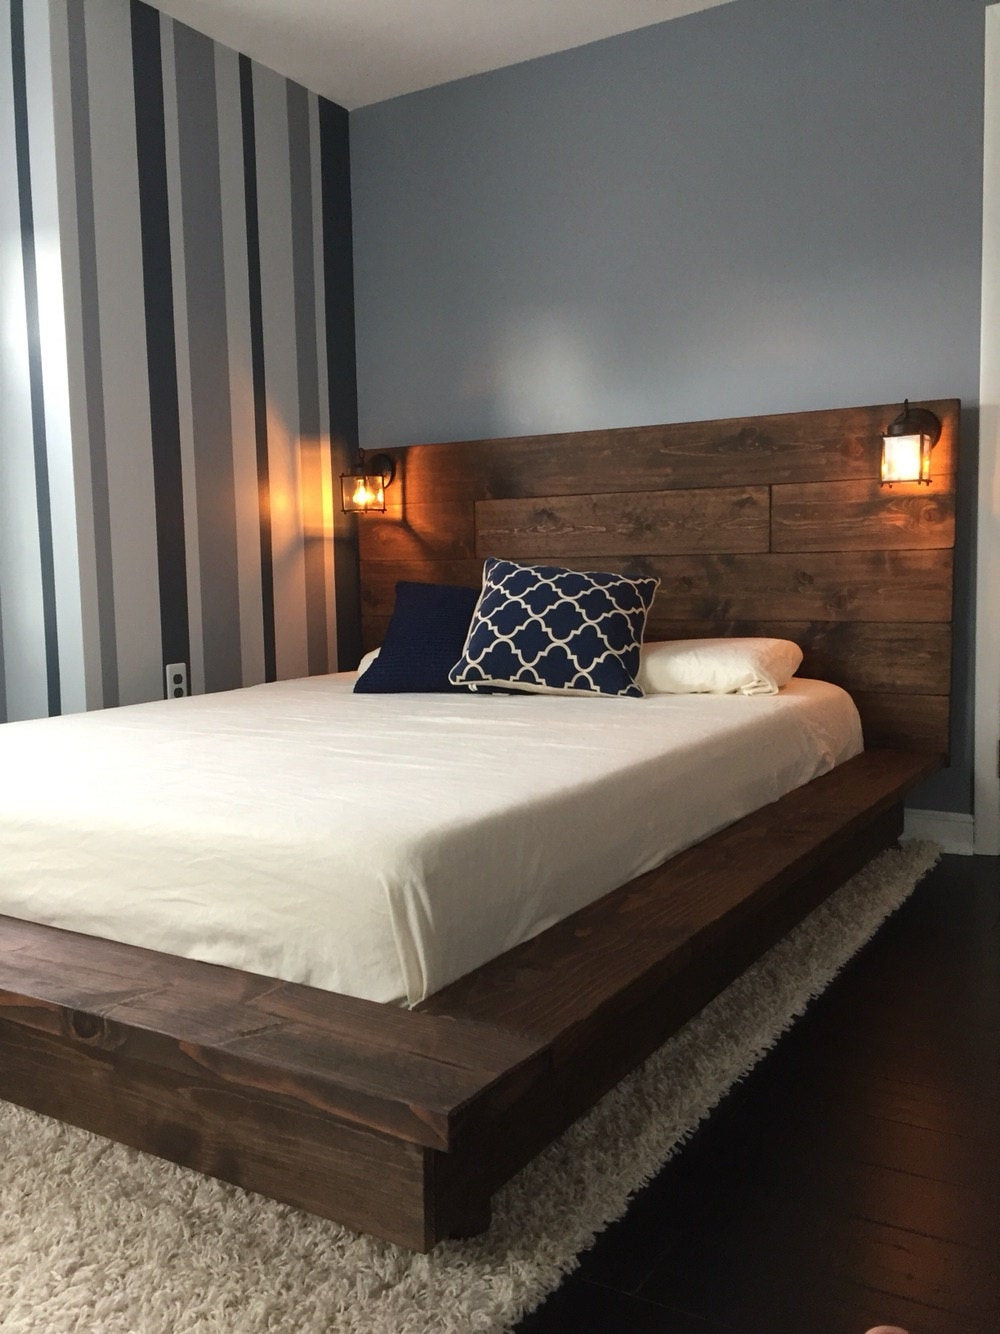 DIY Wood Bed Platform
 Floating Wood Platform Bed frame with Lighted